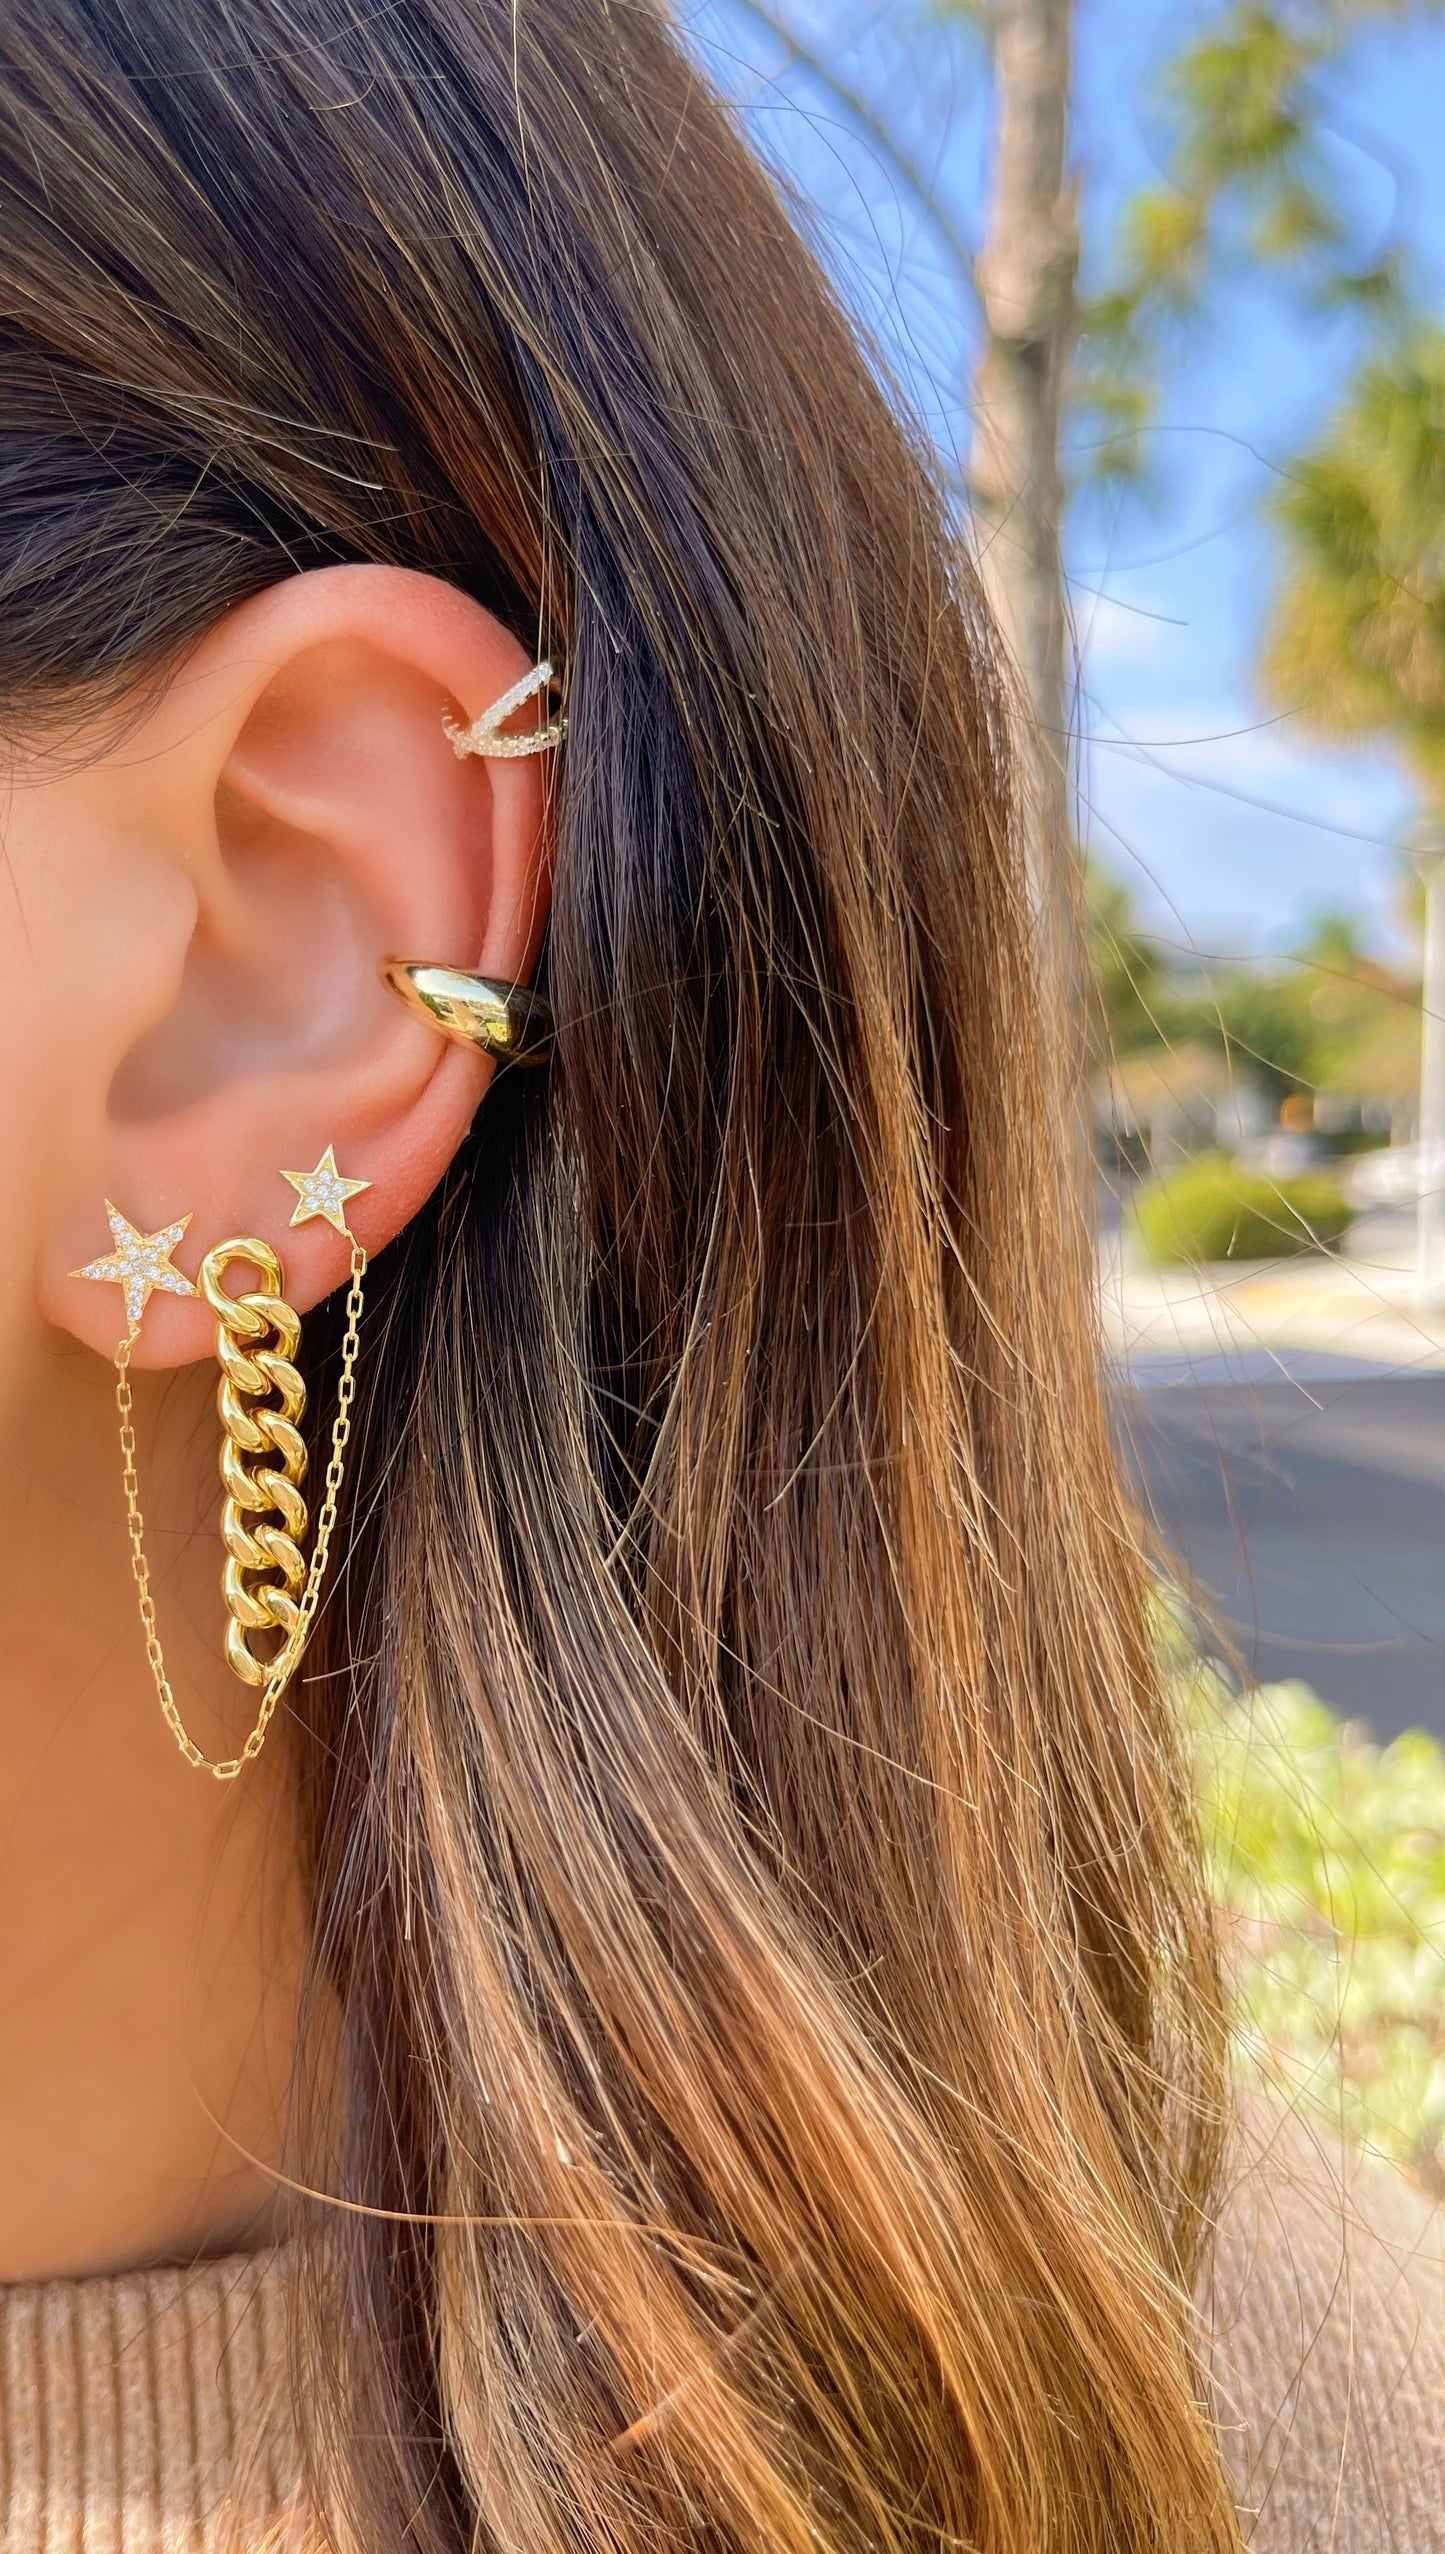 Double Star Earring